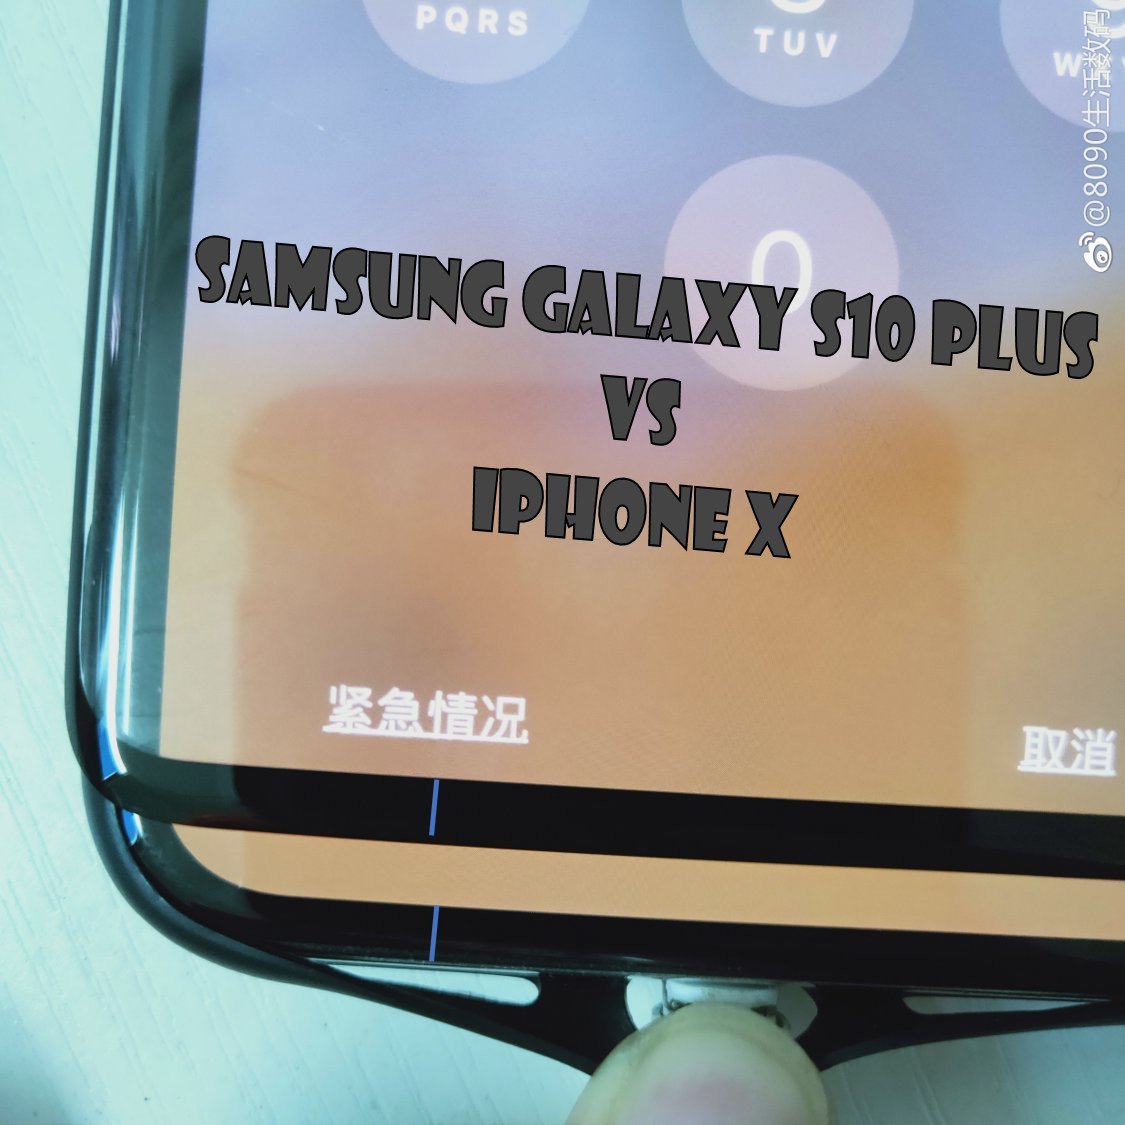 Lekkage van schermafdekking bevestigt dat Samsung Galaxy S10 Plus een kleine, schattige kin heeft